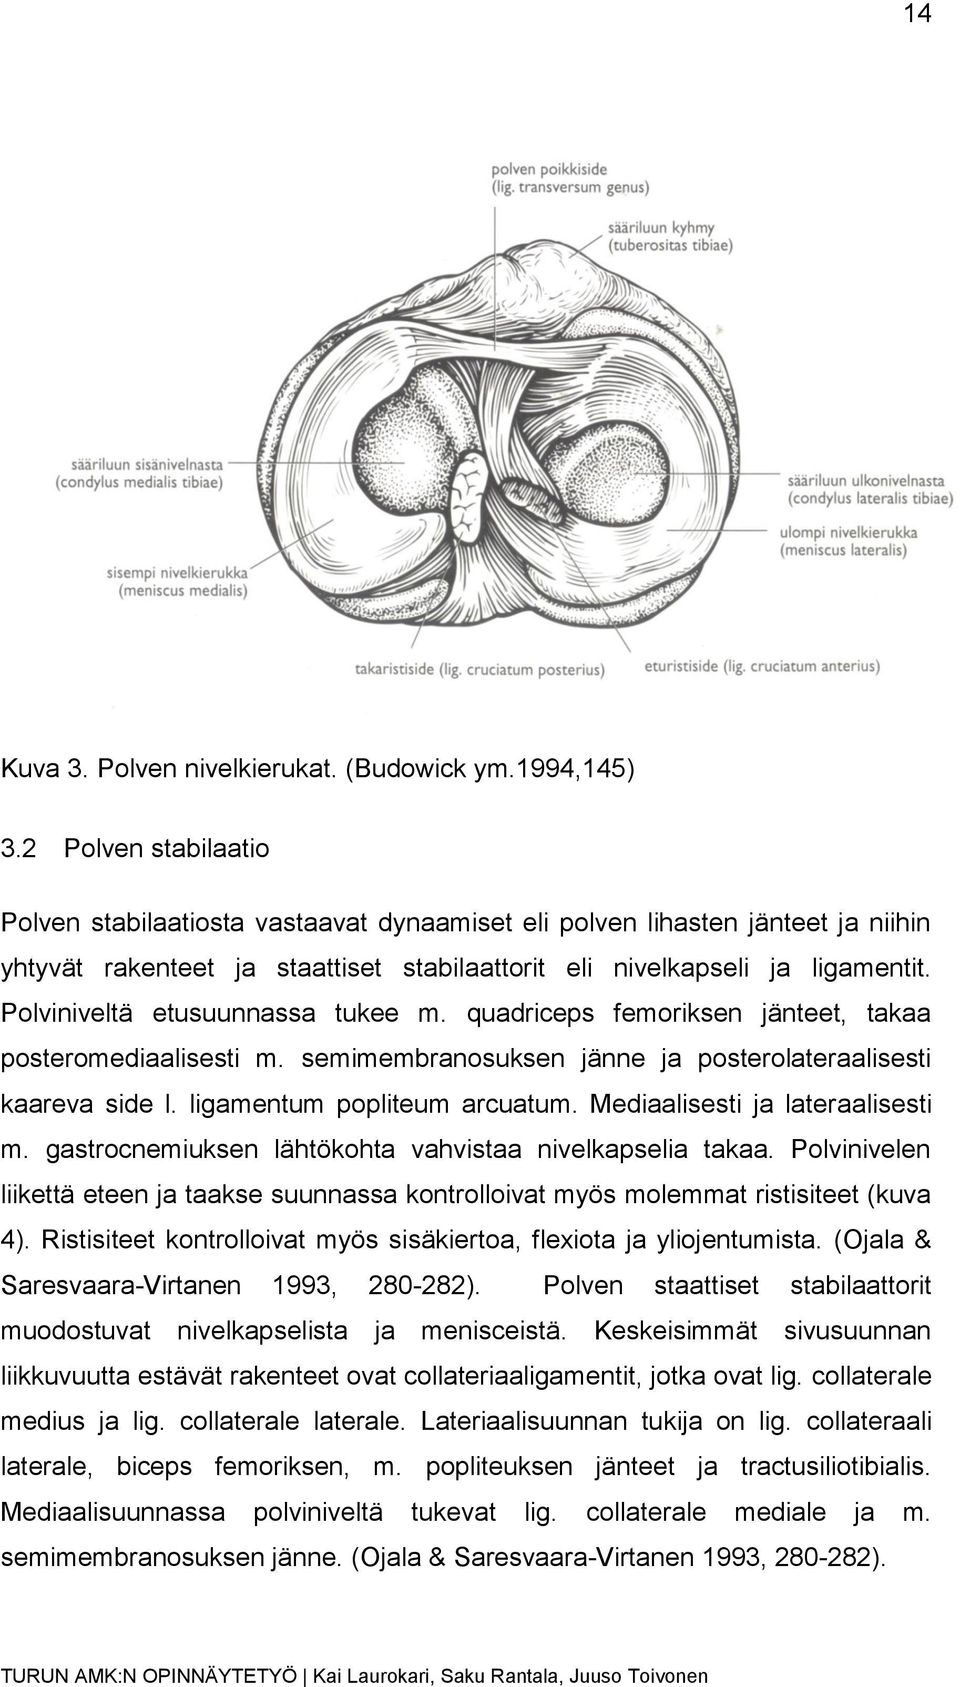 Polviniveltä etusuunnassa tukee m. quadriceps femoriksen jänteet, takaa posteromediaalisesti m. semimembranosuksen jänne ja posterolateraalisesti kaareva side l. ligamentum popliteum arcuatum.